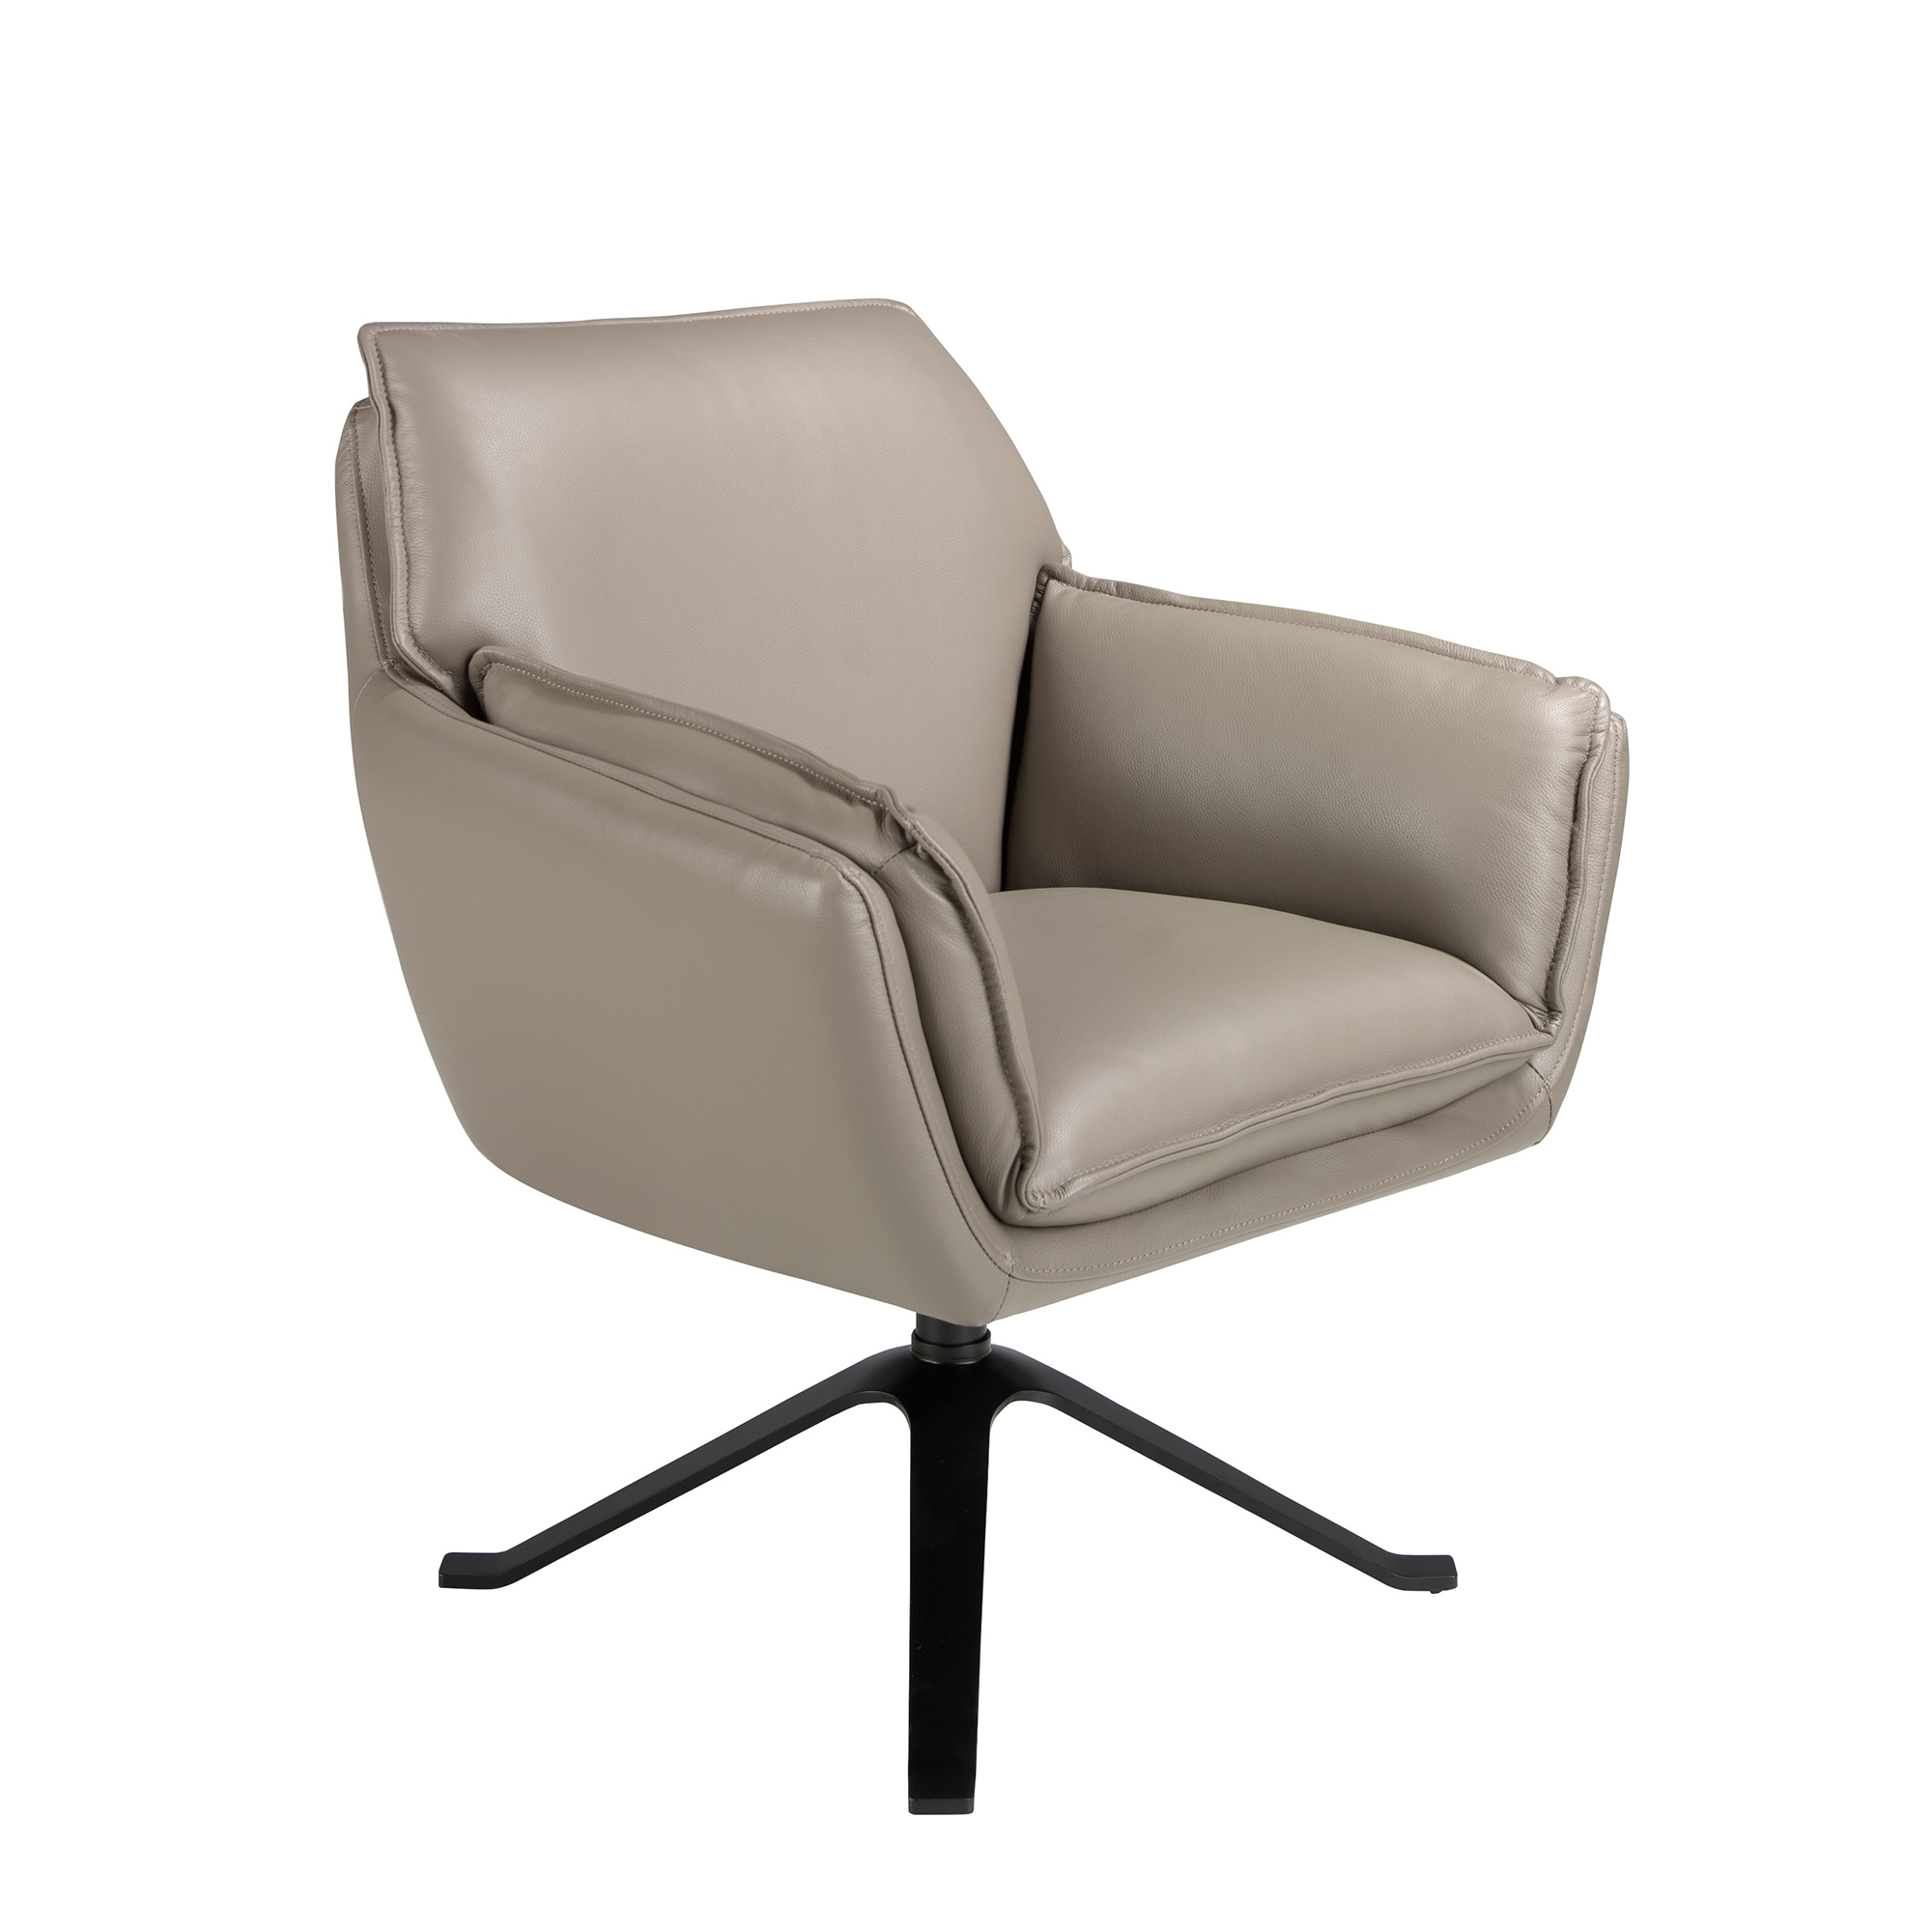 Dark grey leather swivel armchair